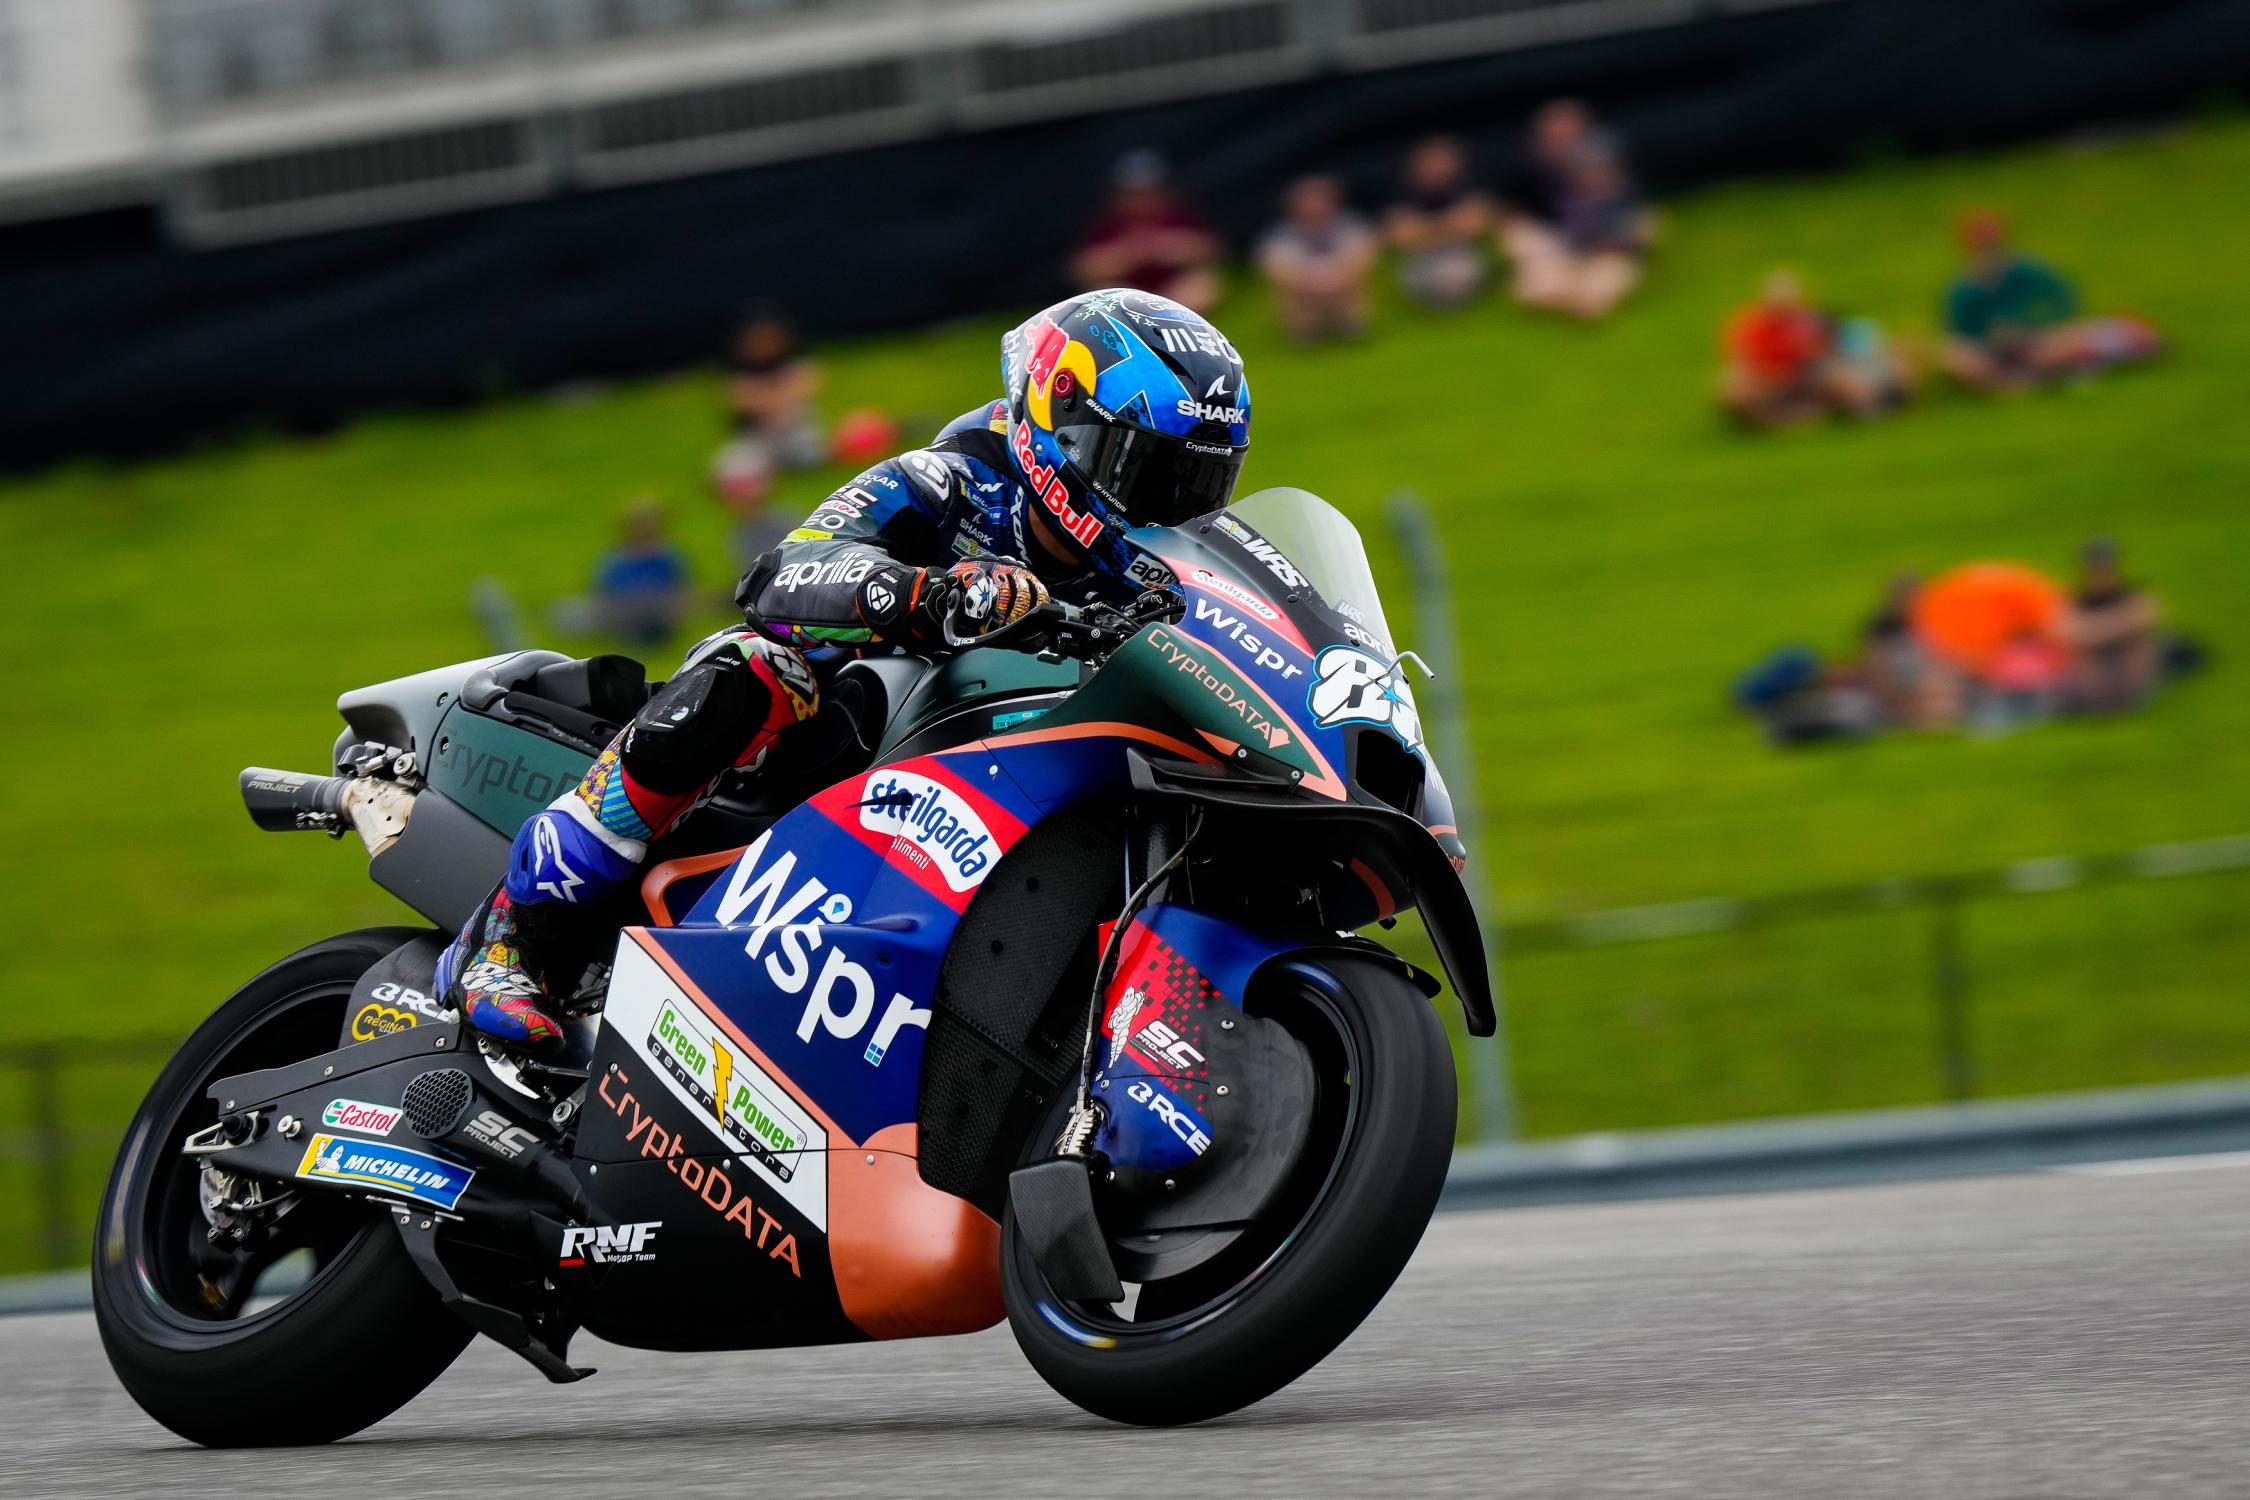 MotoGP, Miguel Oliveira sobre a corrida Sprint: Será um novo desafio para  as equipas” - MotoSport